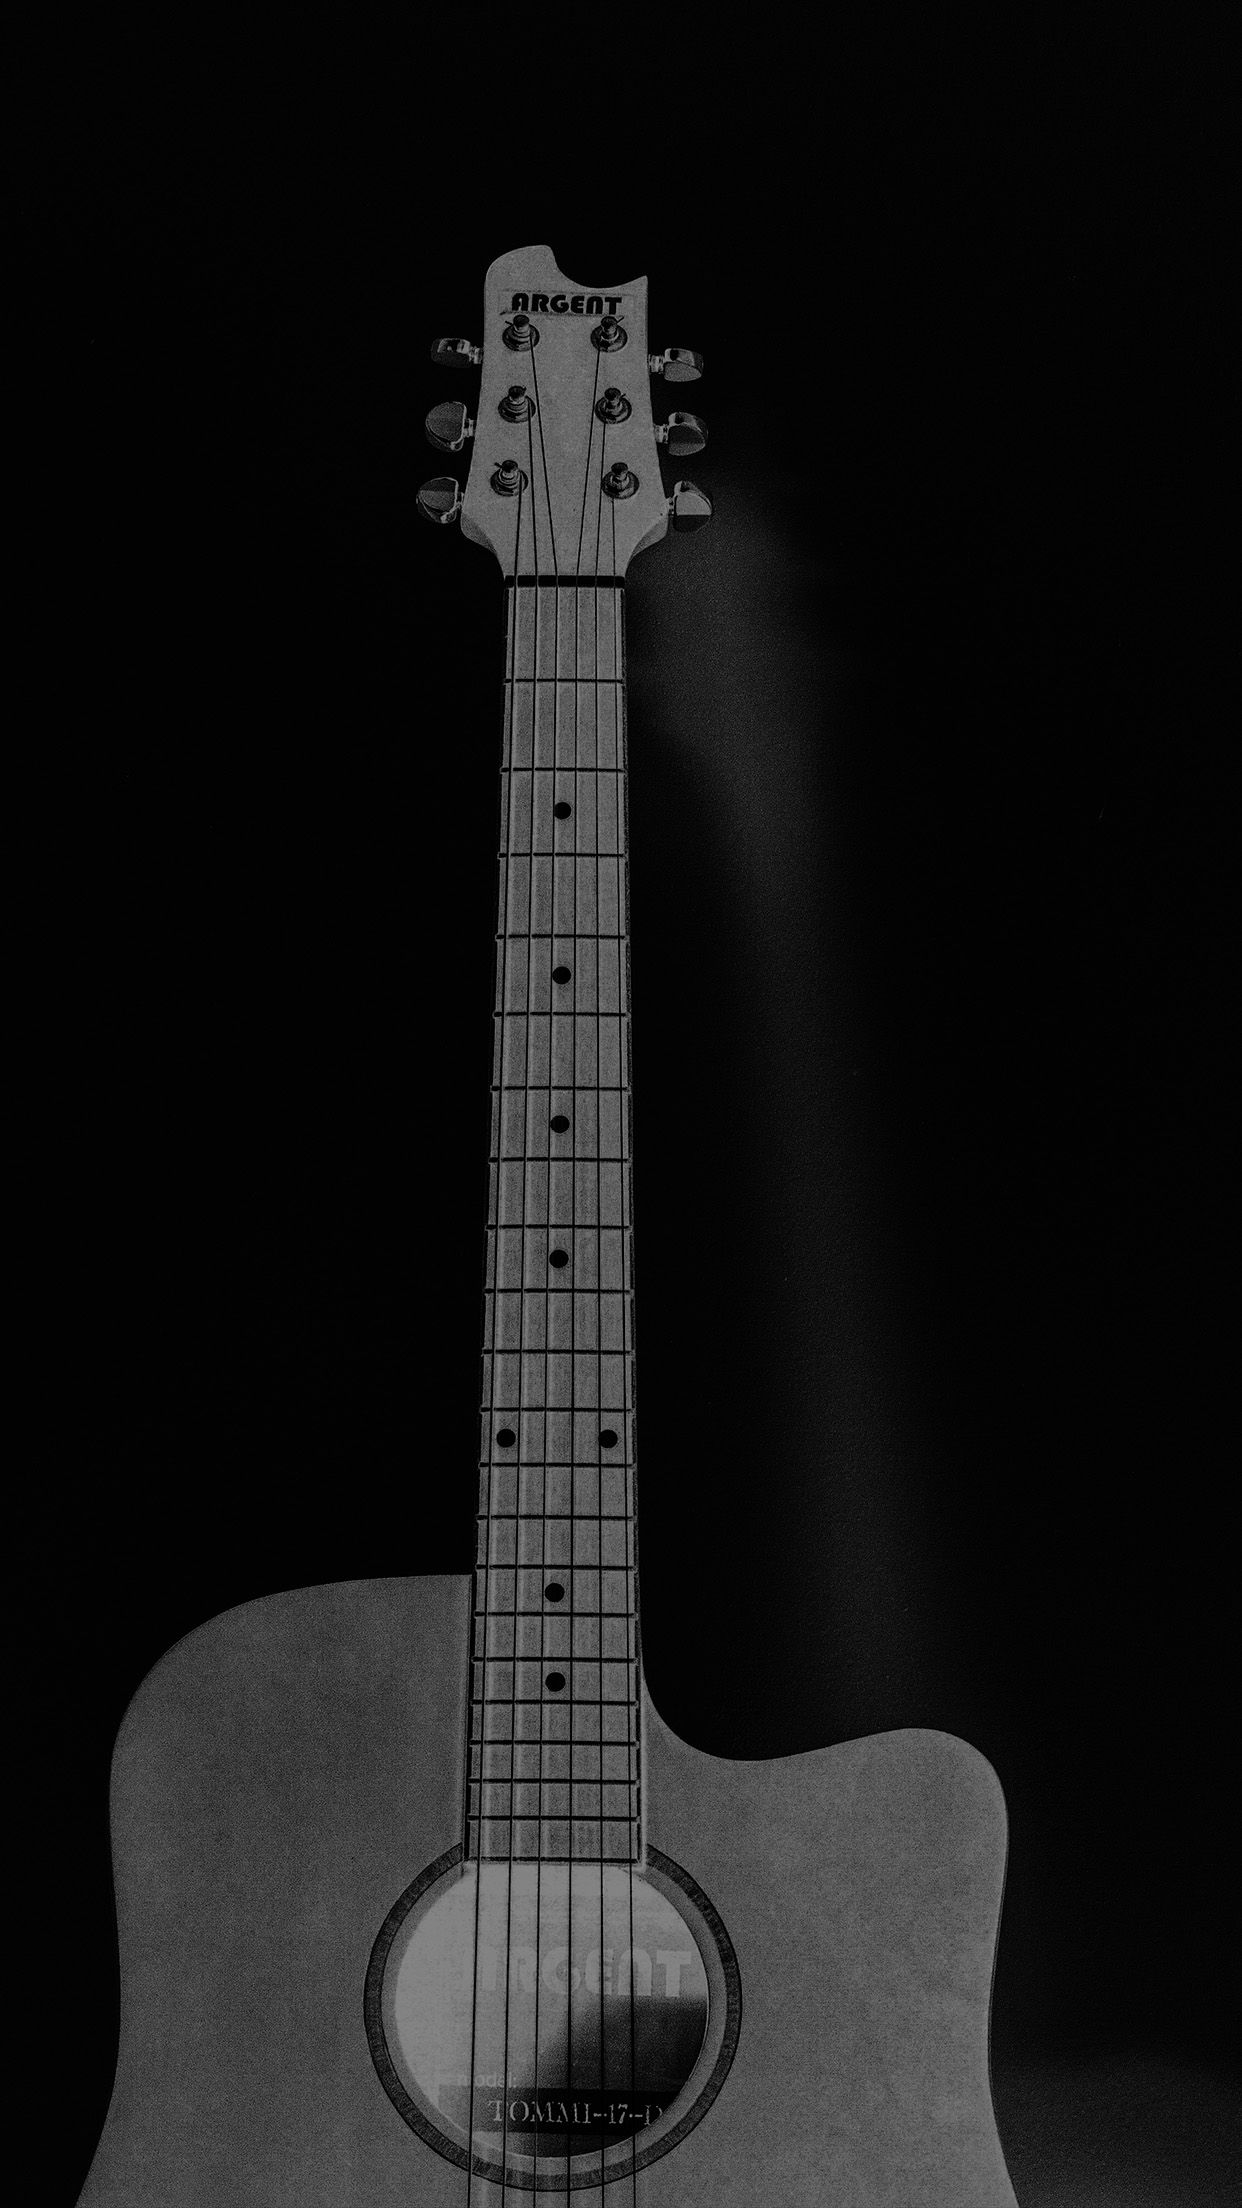 57+] Guitar Black Background - WallpaperSafari